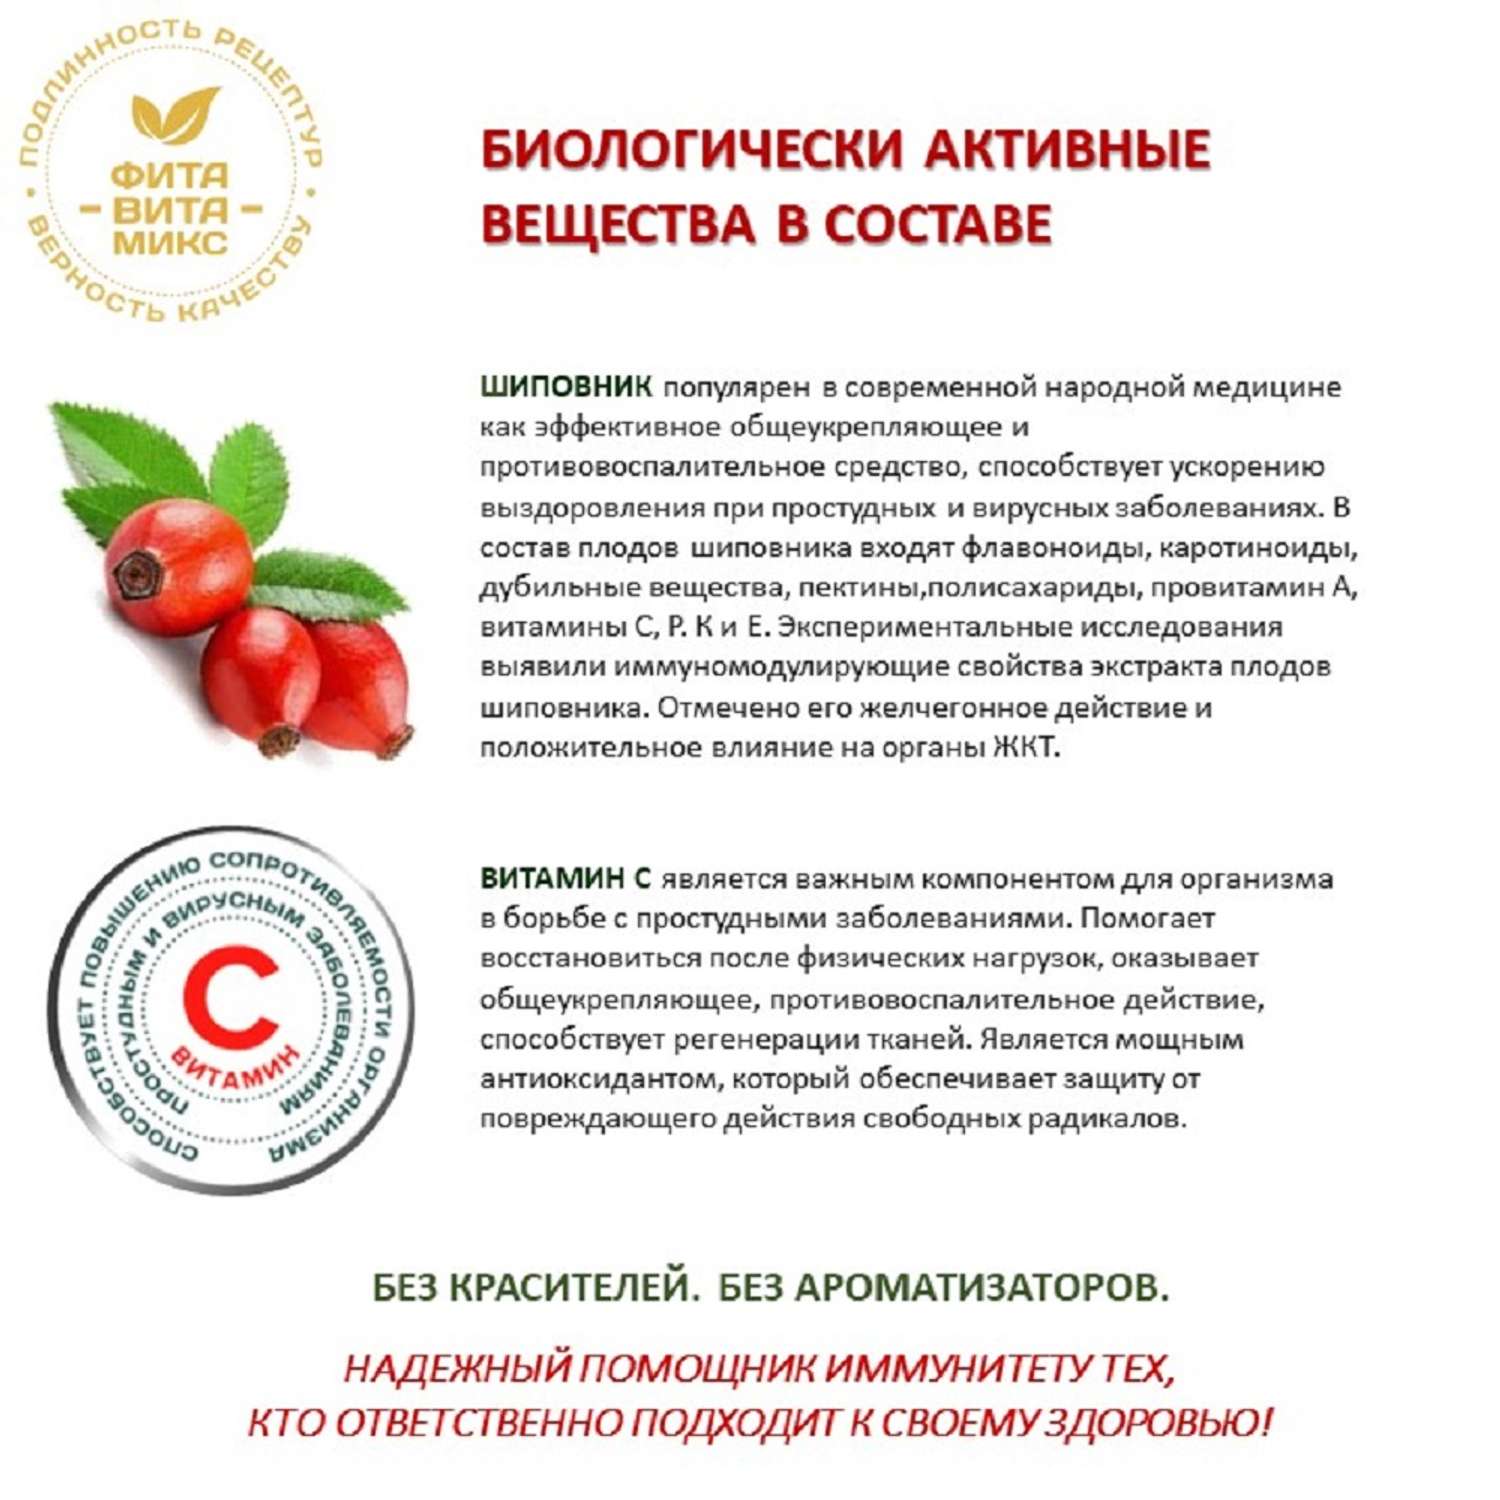 Сироп шиповника ФИТА-ВИТА-МИКС с витамином С 290 мл - фото 6